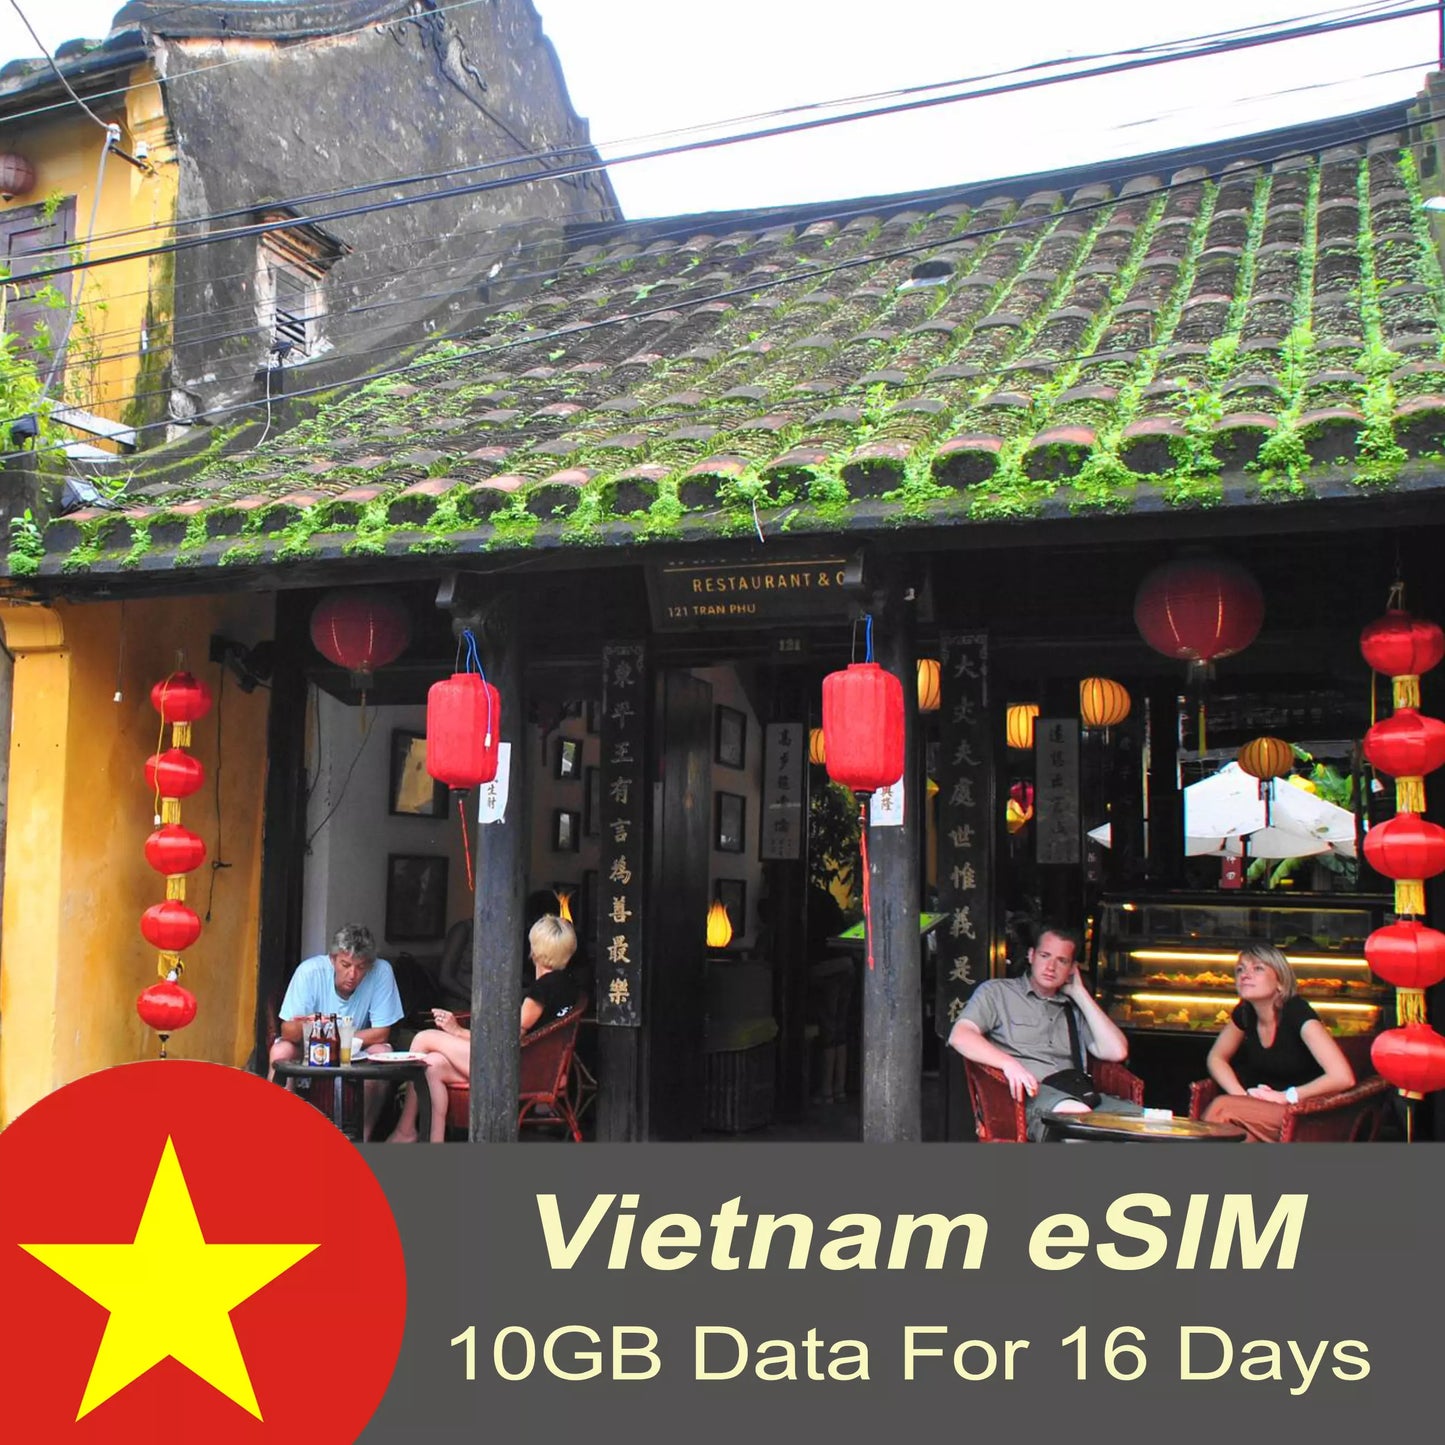 Vietnam Tourist eSIM 10GB - 16 days